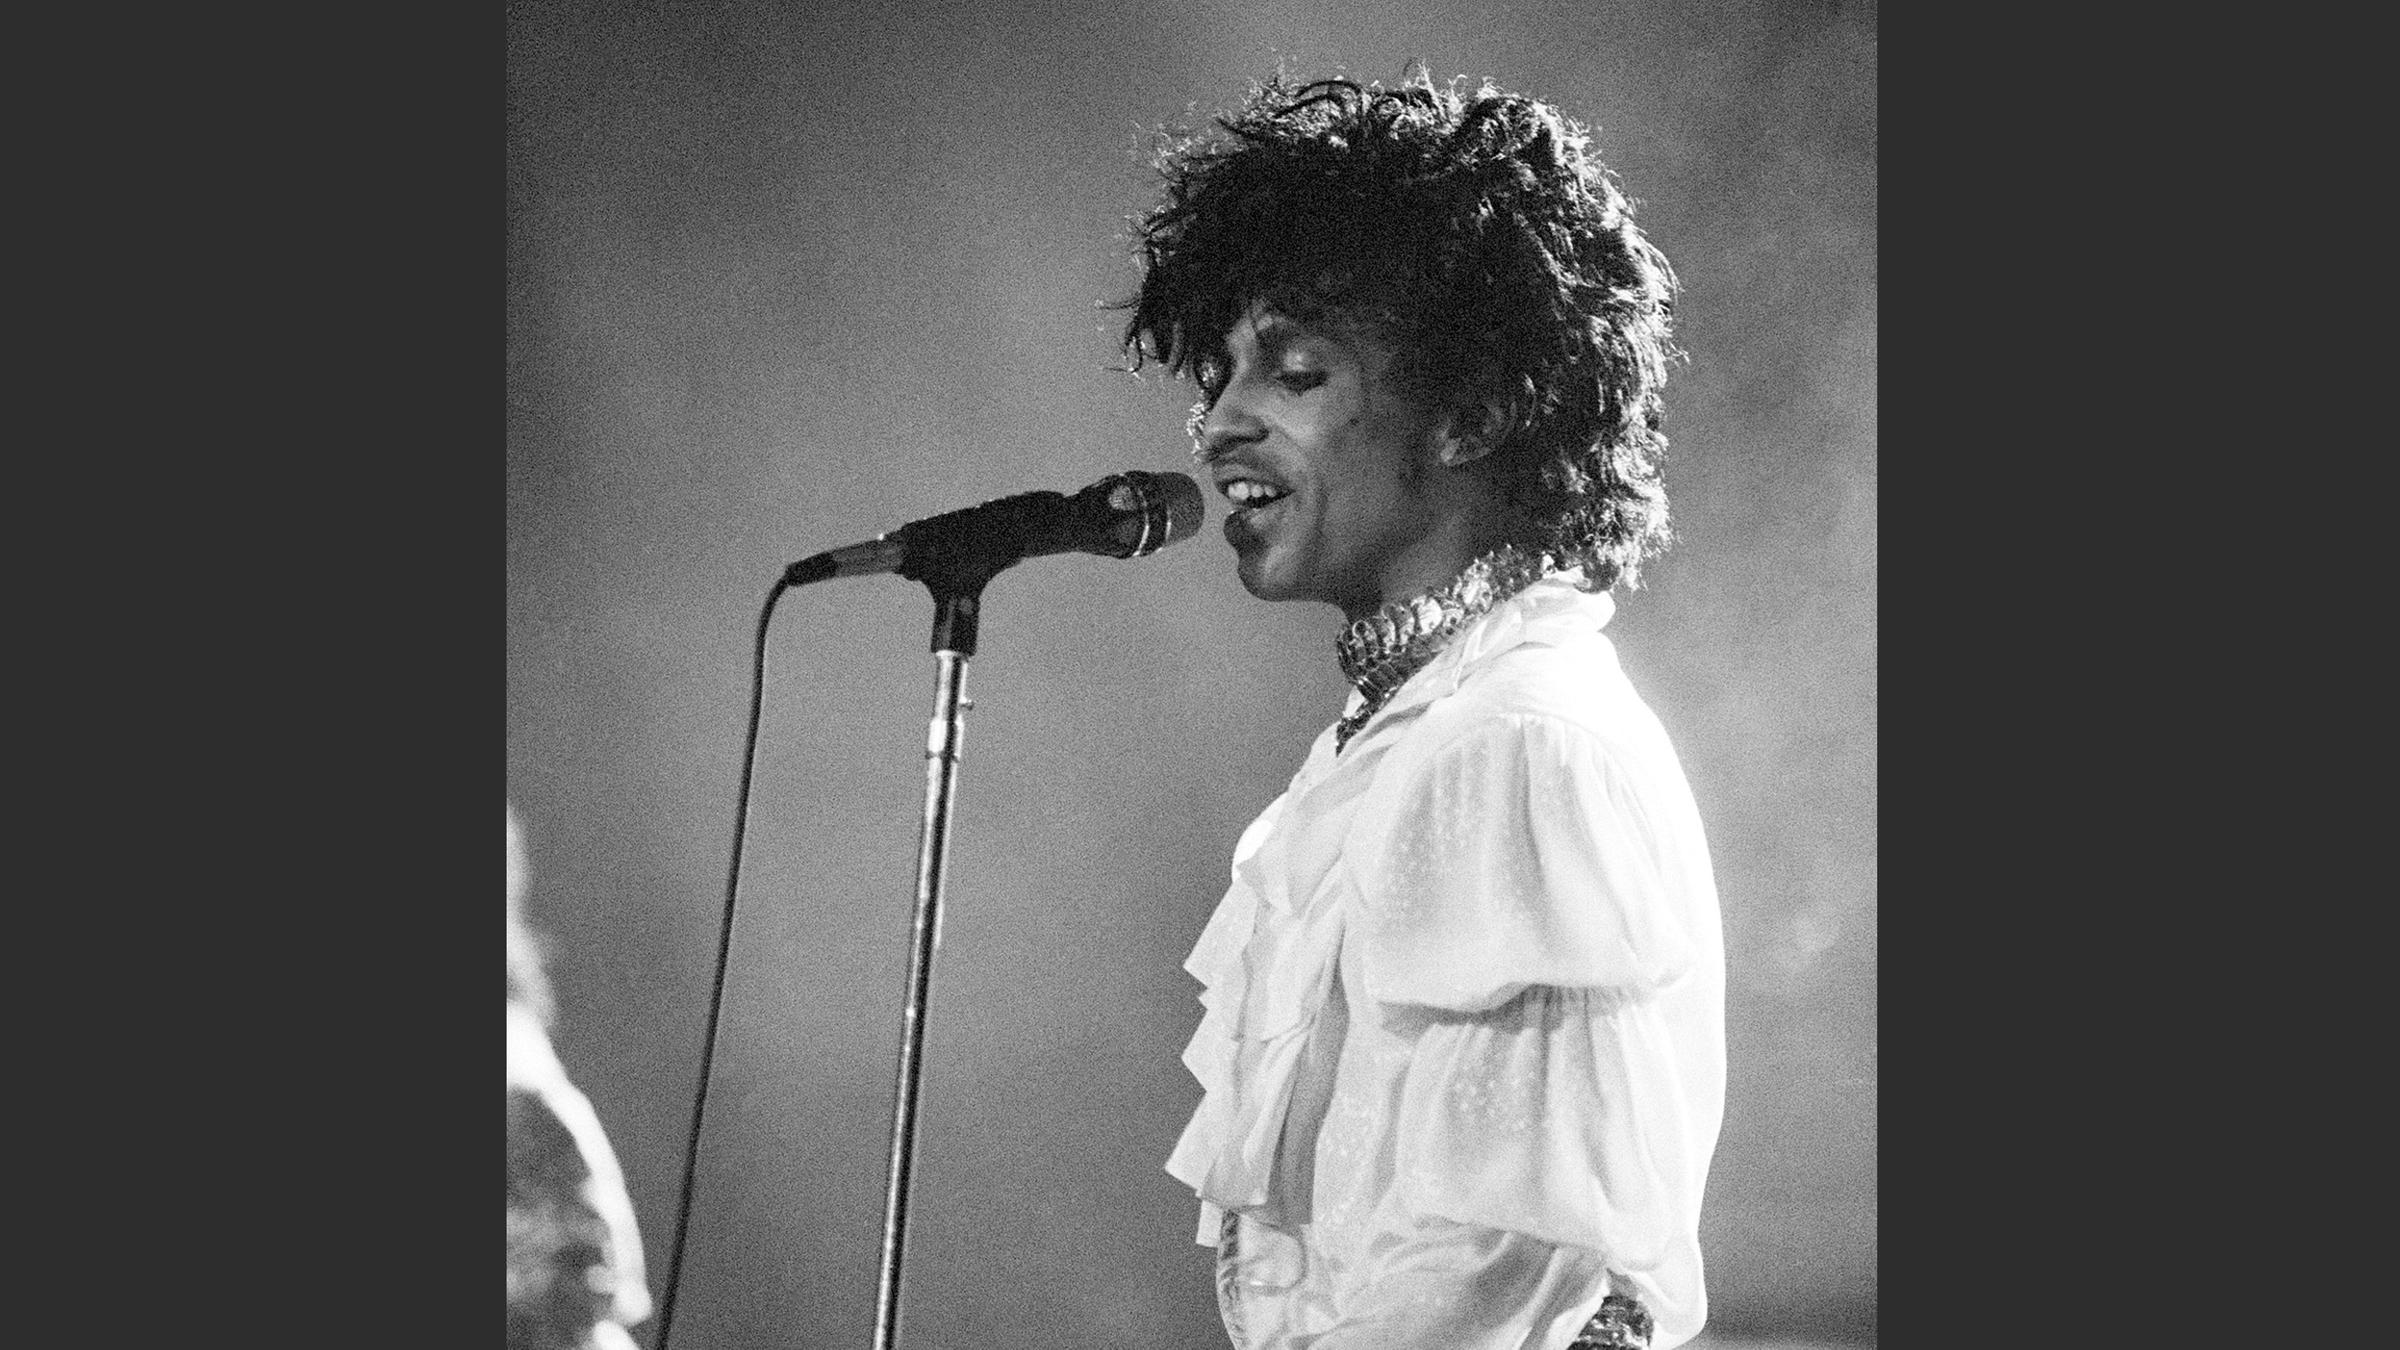 Der 2016 verstorbene Musiker Prince bei einem Konzert 